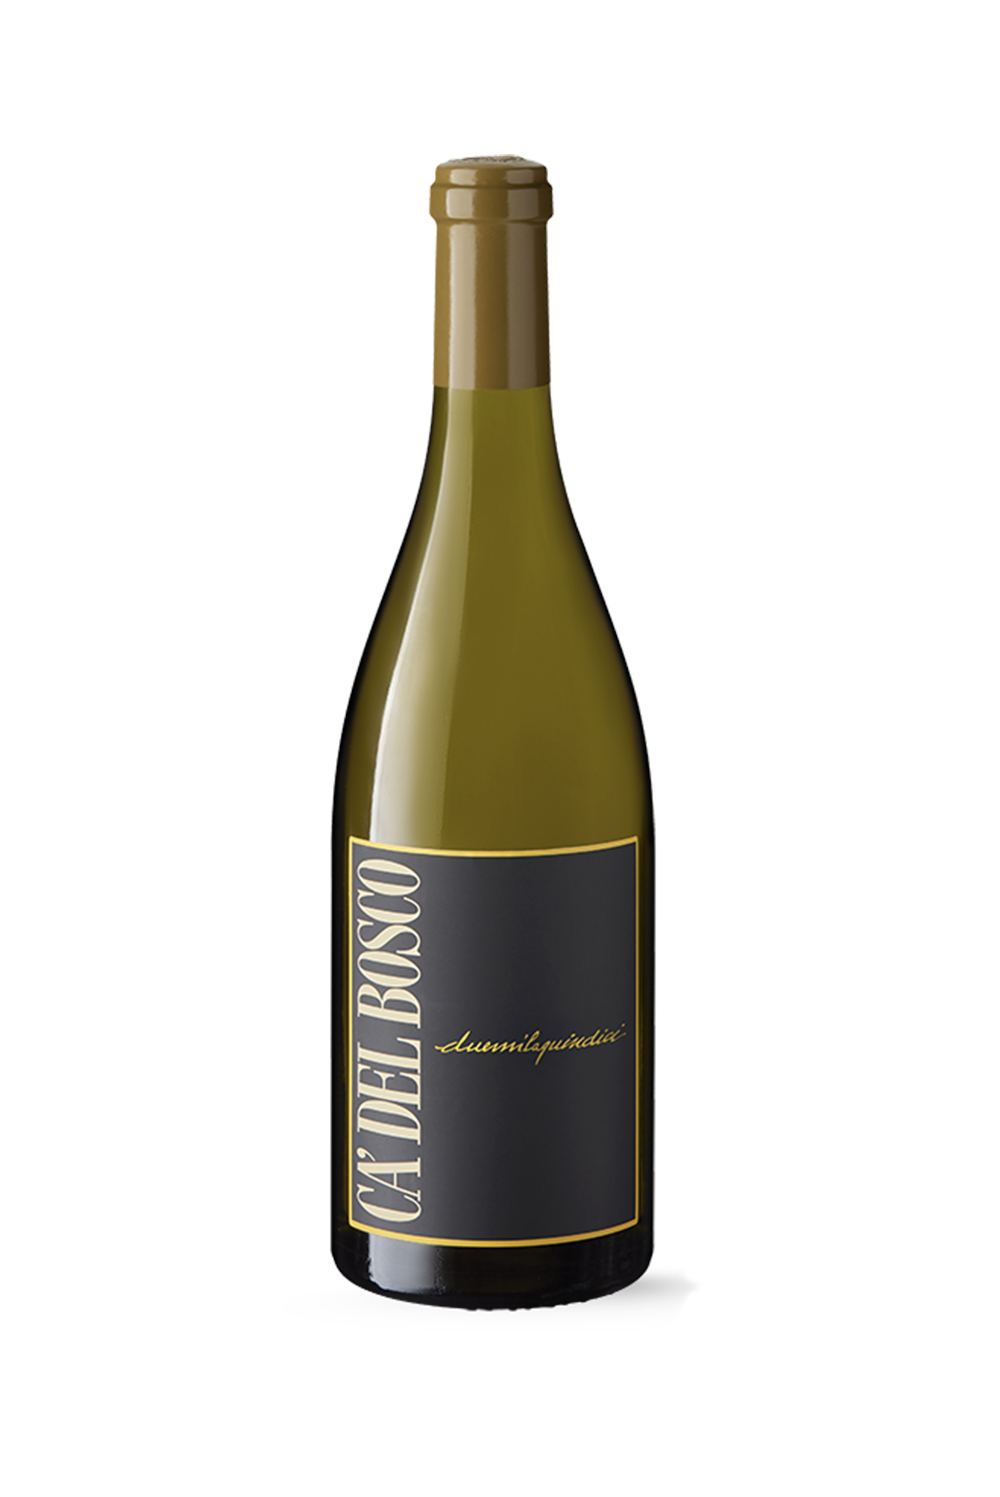 Curtefranca Chardonnay 2016